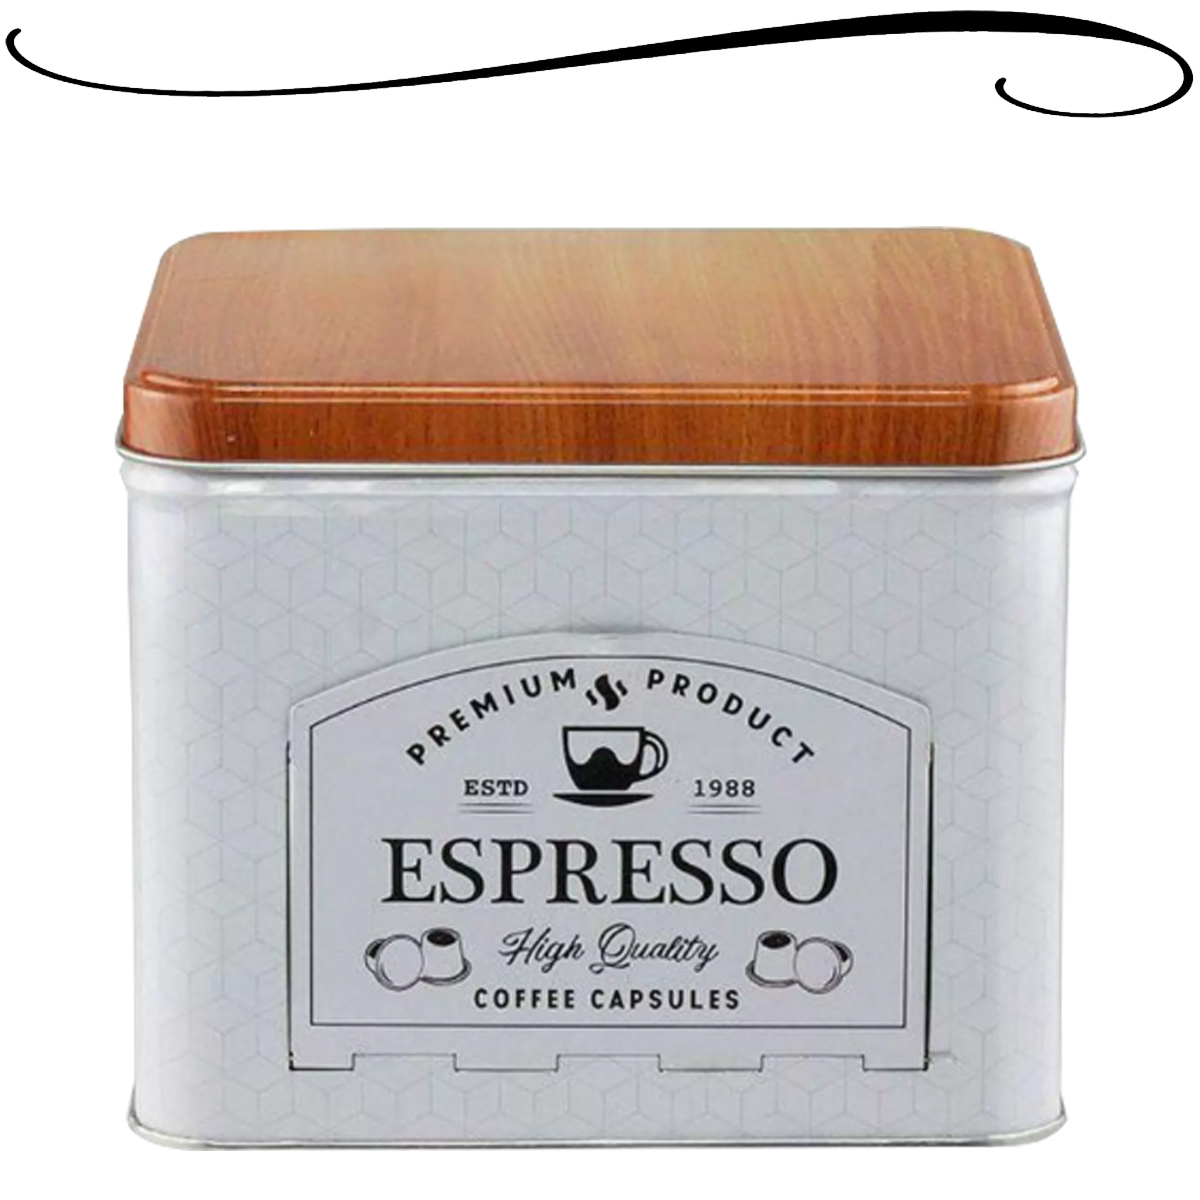 Porta Cápsulas Caixa de Café Empilhável Nespresso ou Semelhantes de Metal Expresso Branco